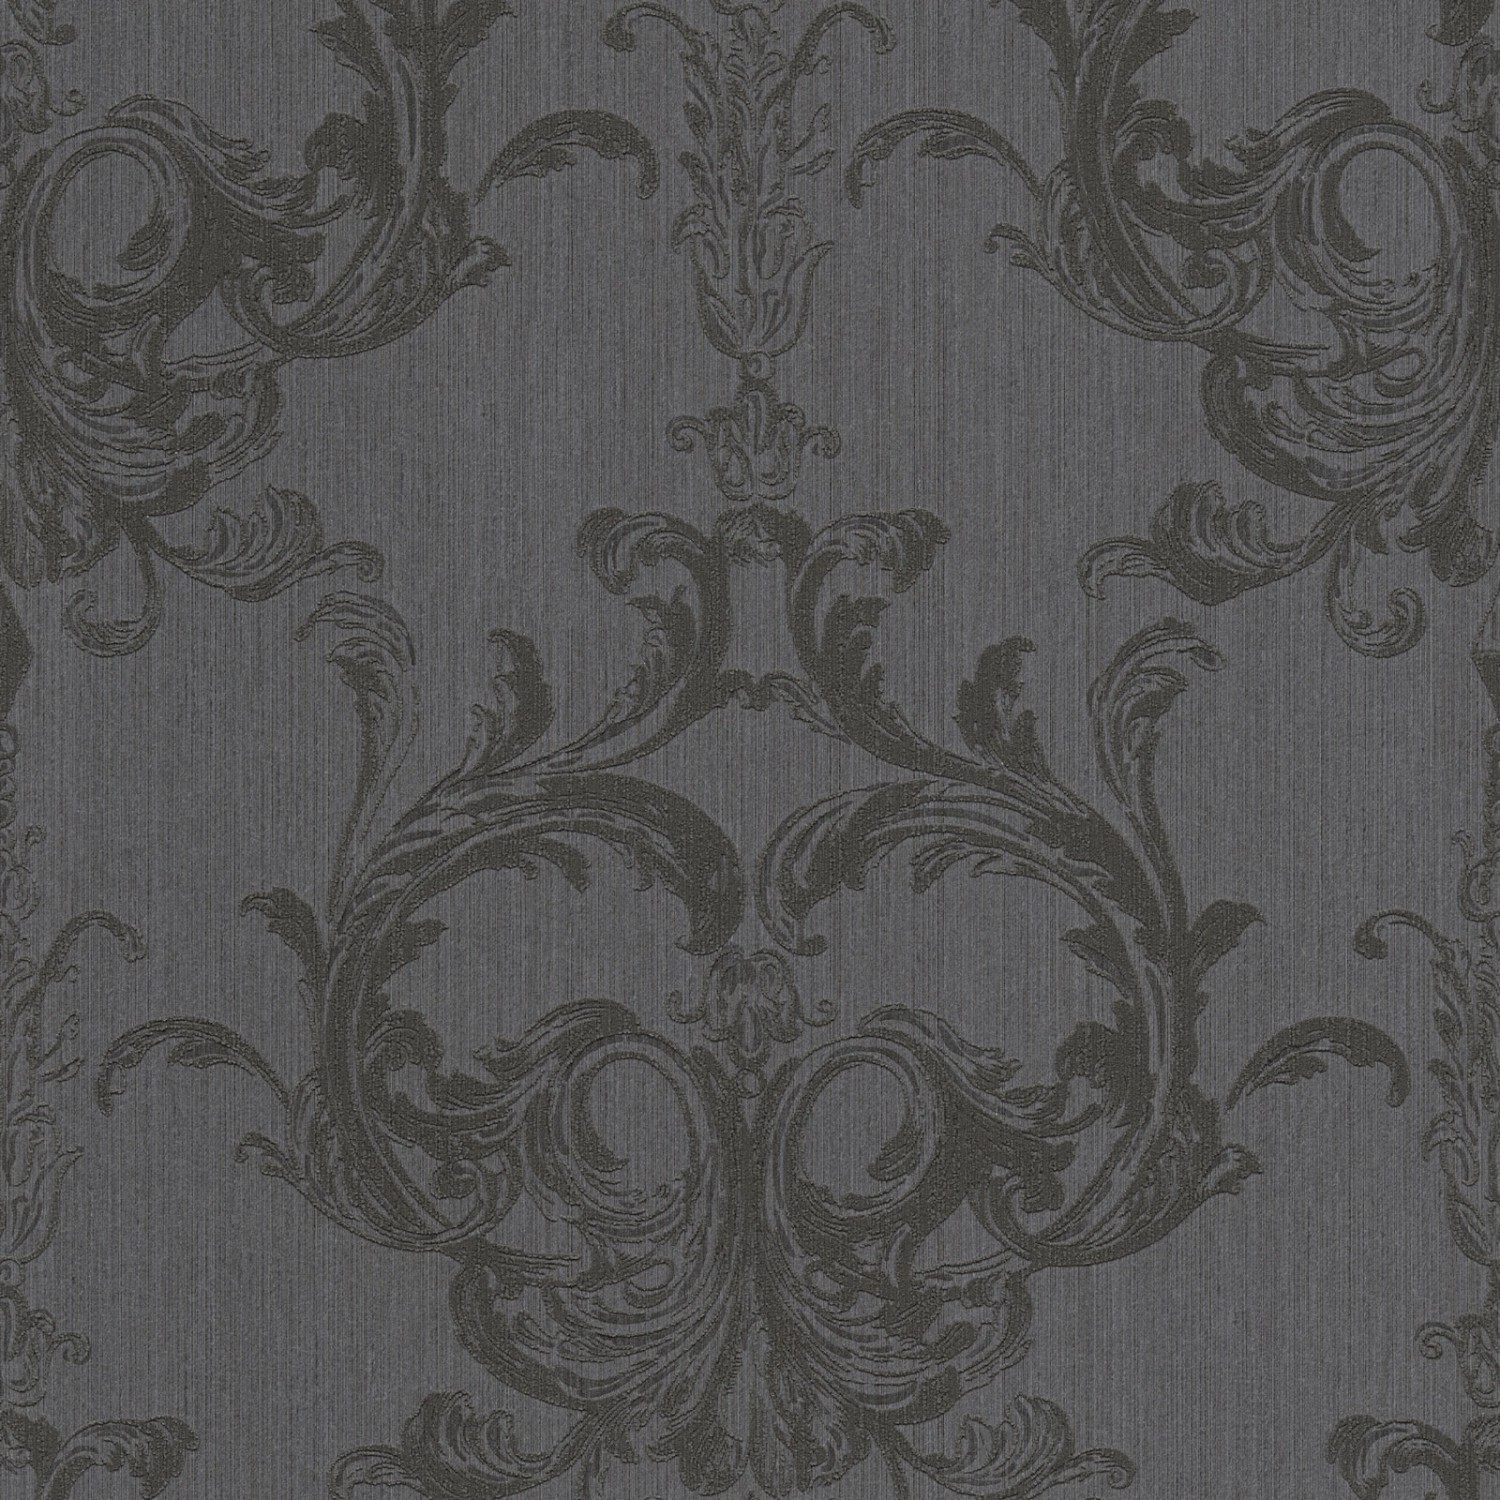 Bricoflor Neobarock Textiltapete Schwarz Grau Wohnzimmer und Schlafzimmer Vliestapete mit Textil Rokoko Ornament Barock 